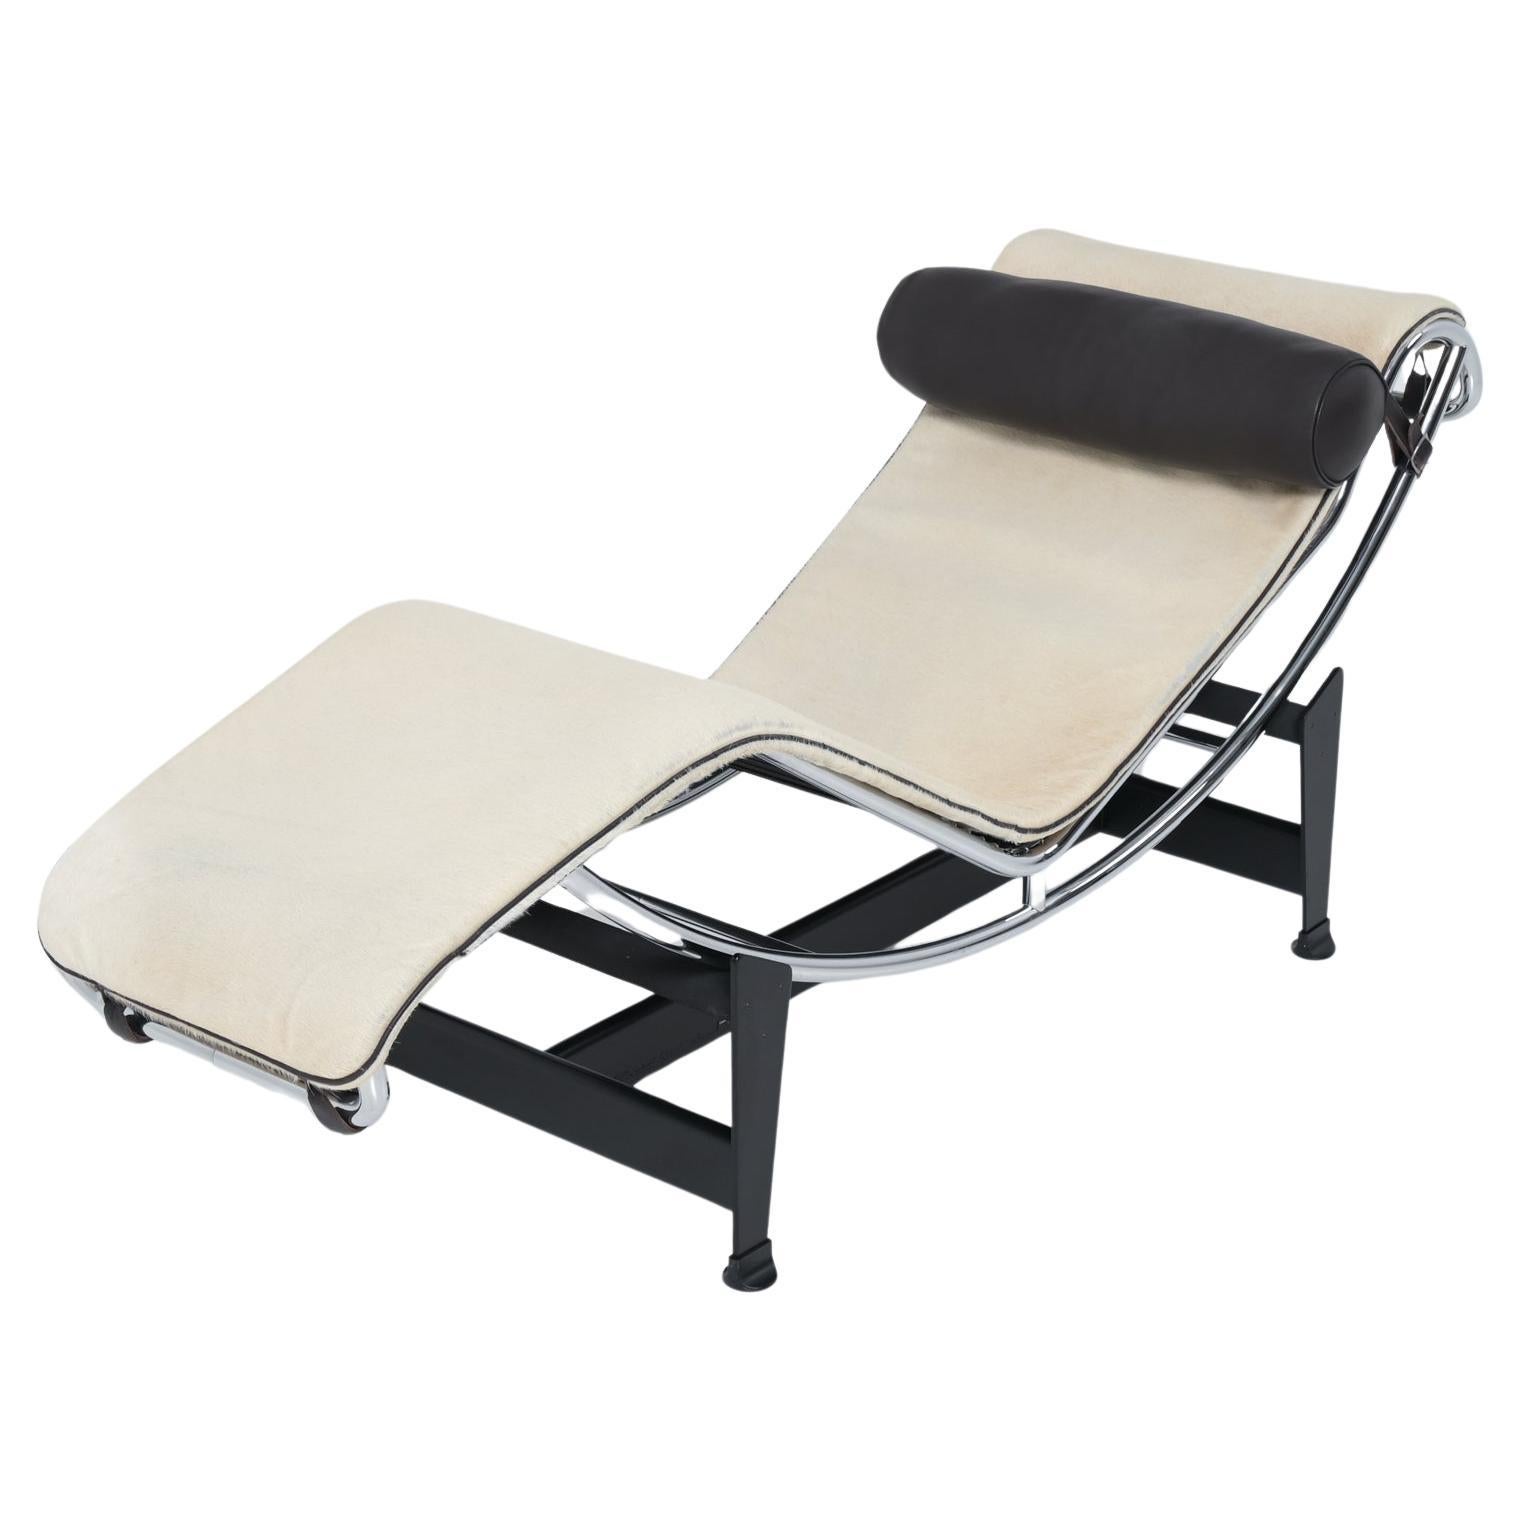 Chaise longue LC4 de Le Corbusier, Jeanneret et Perriand pour Cassina limitée